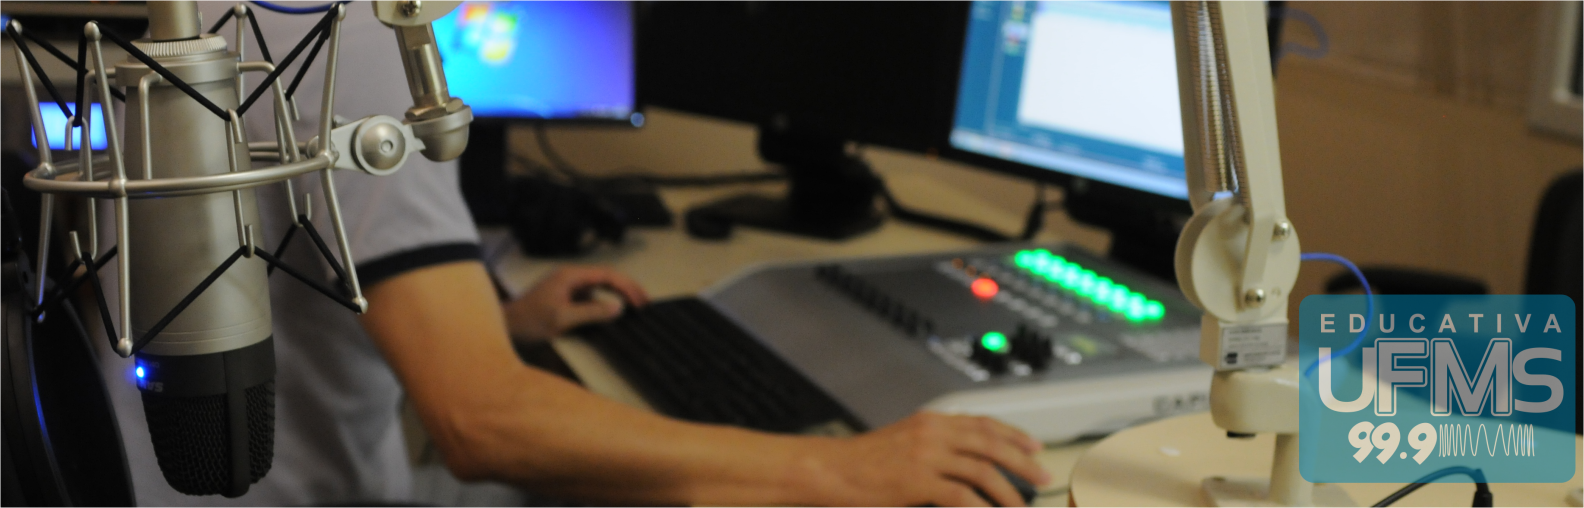 Imagem de uma pessoa operando os equipamentos da rádio Educativa UFMS.